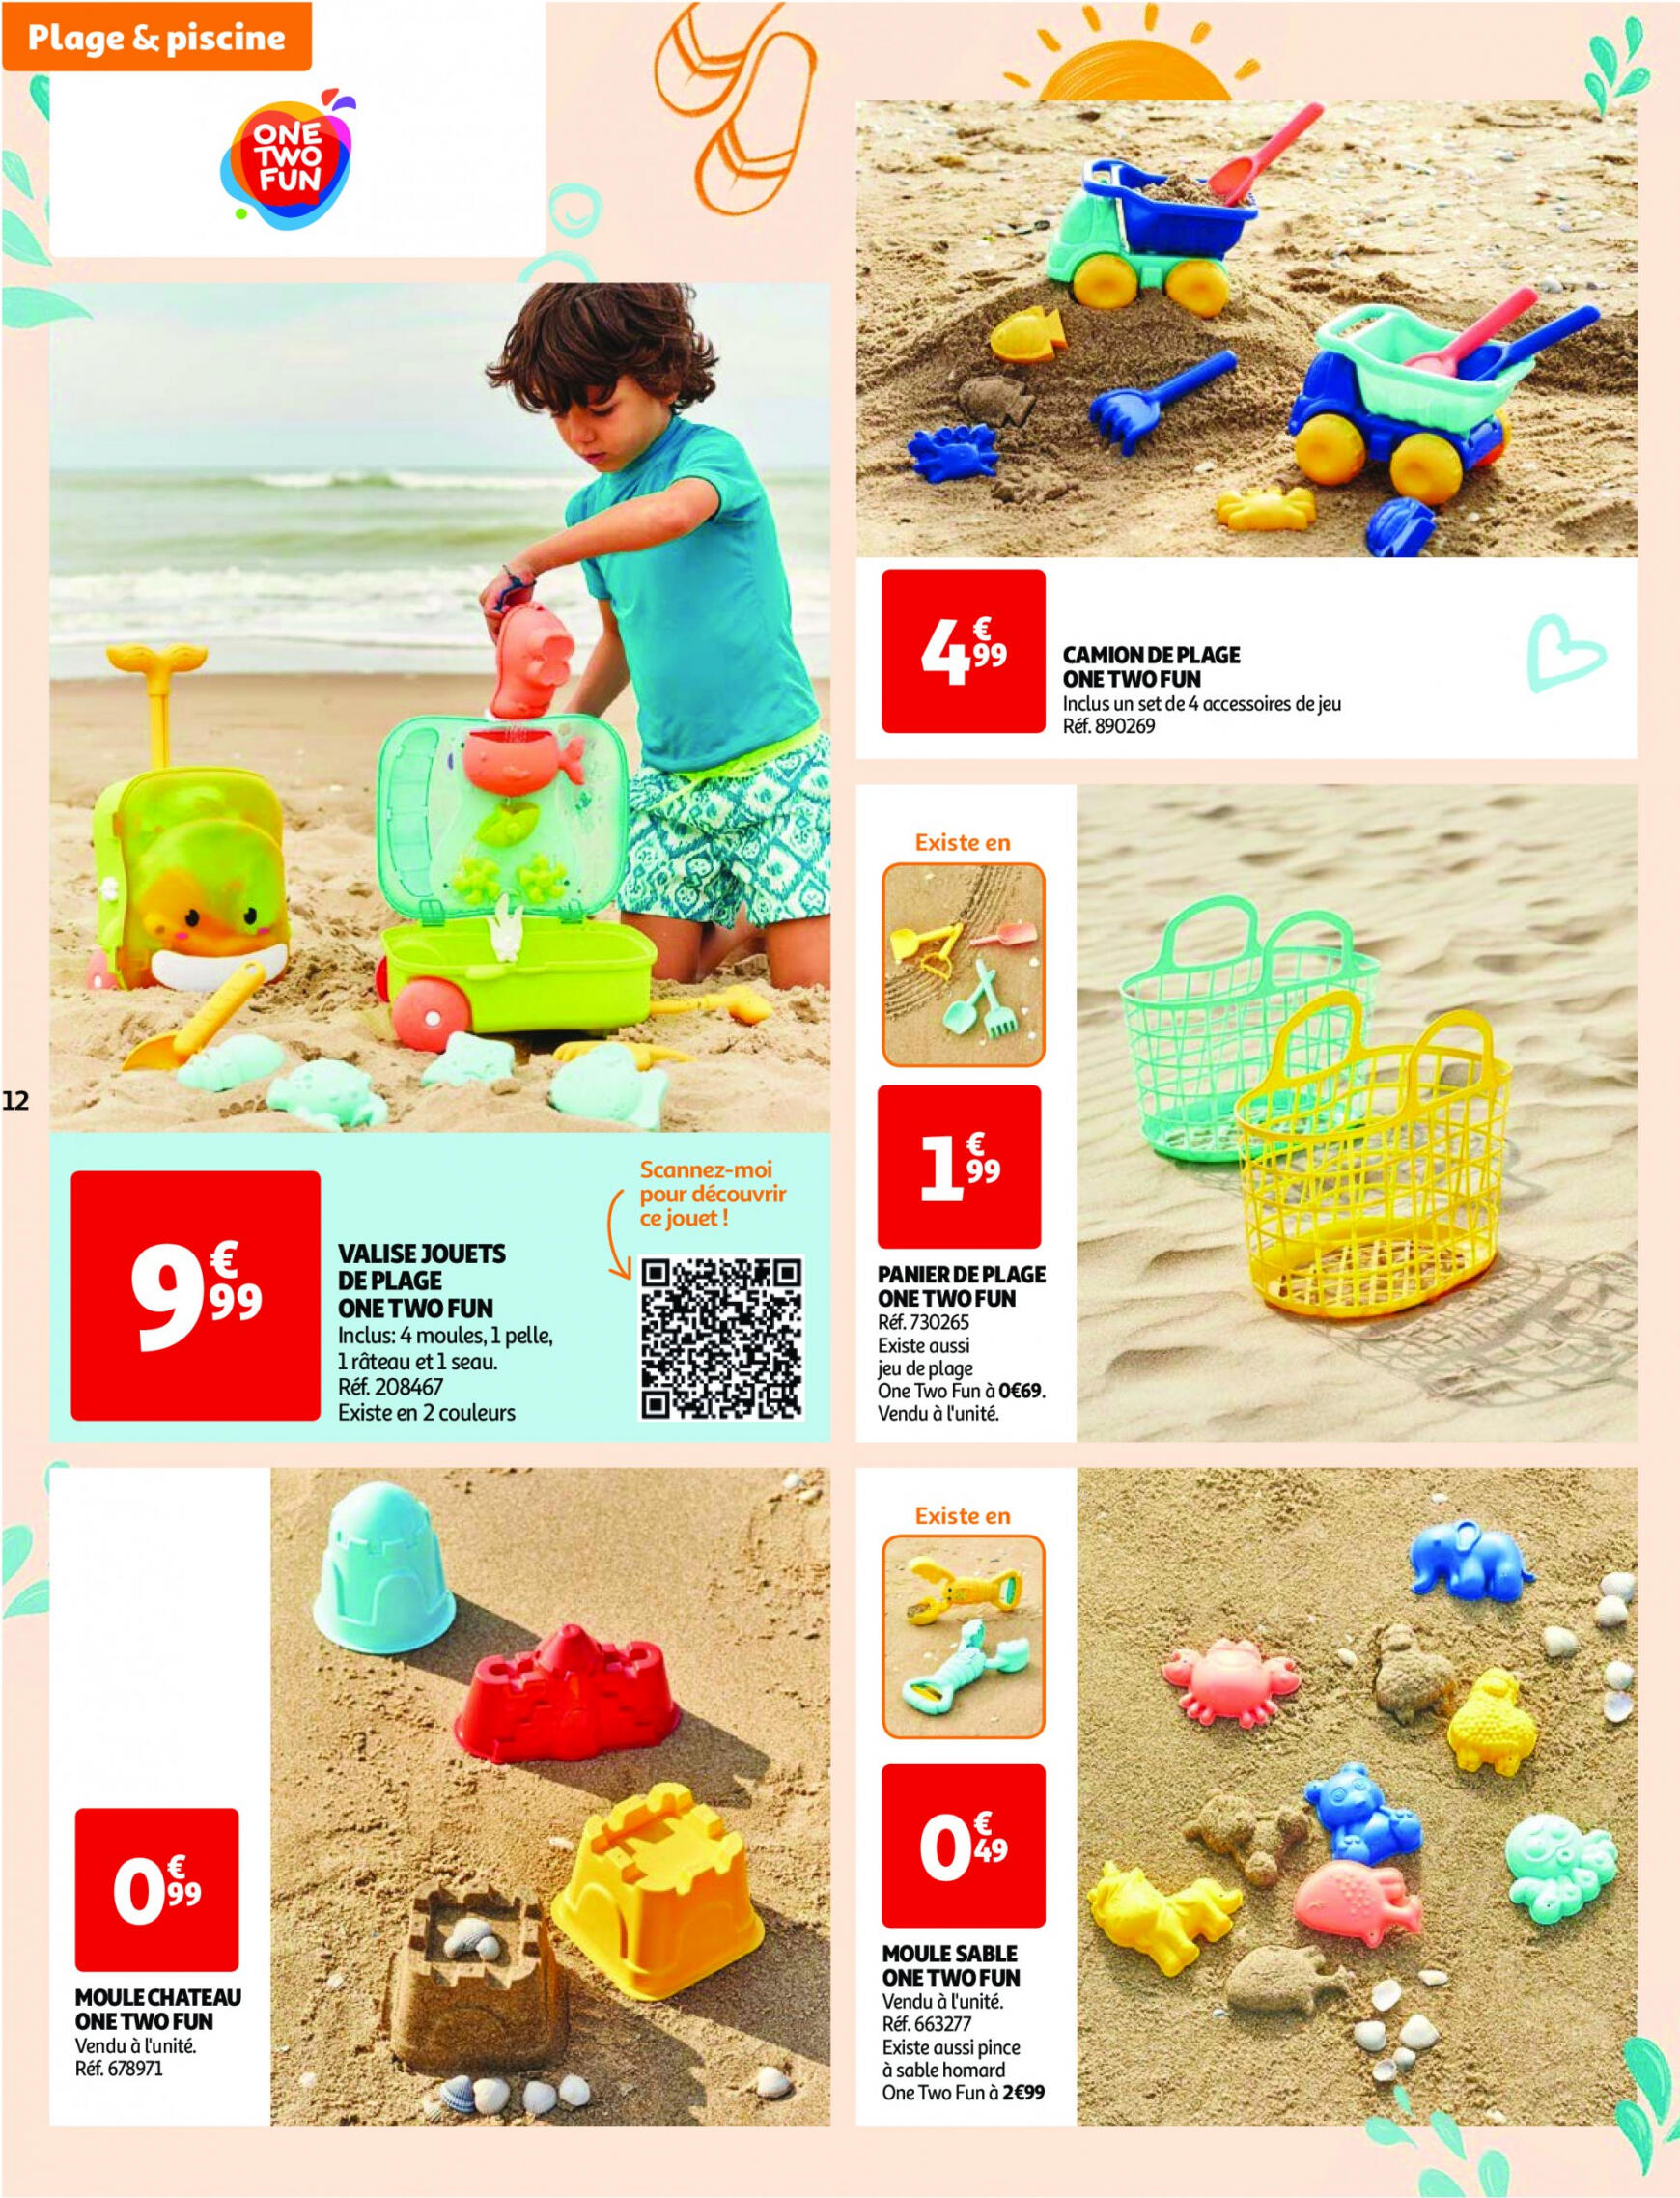 auchan - Auchan - Nos exclusivités Summer pour s'amuser tout l'été folder huidig 14.05. - 15.06. - page: 12